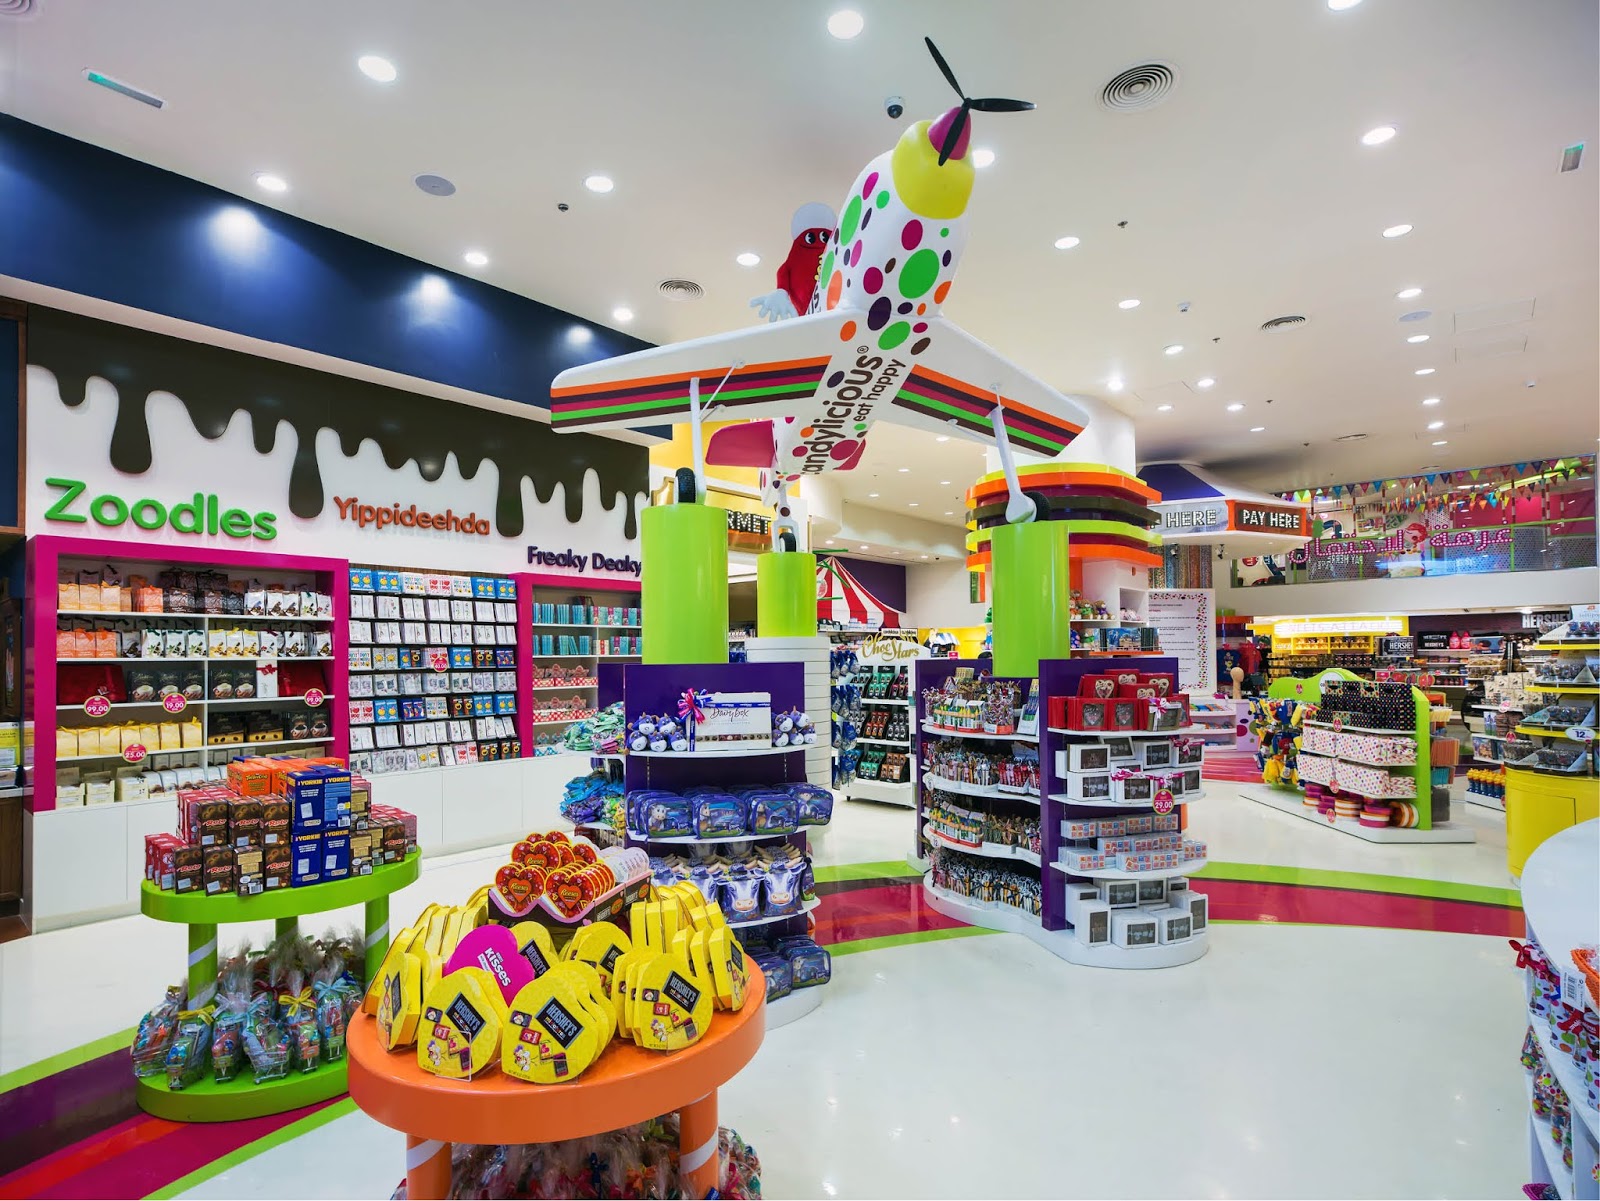 Bí kíp quản lý hàng hóa hiệu quả tránh thất thoát cho cửa hàng kinh doanh đồ chơi trẻ em